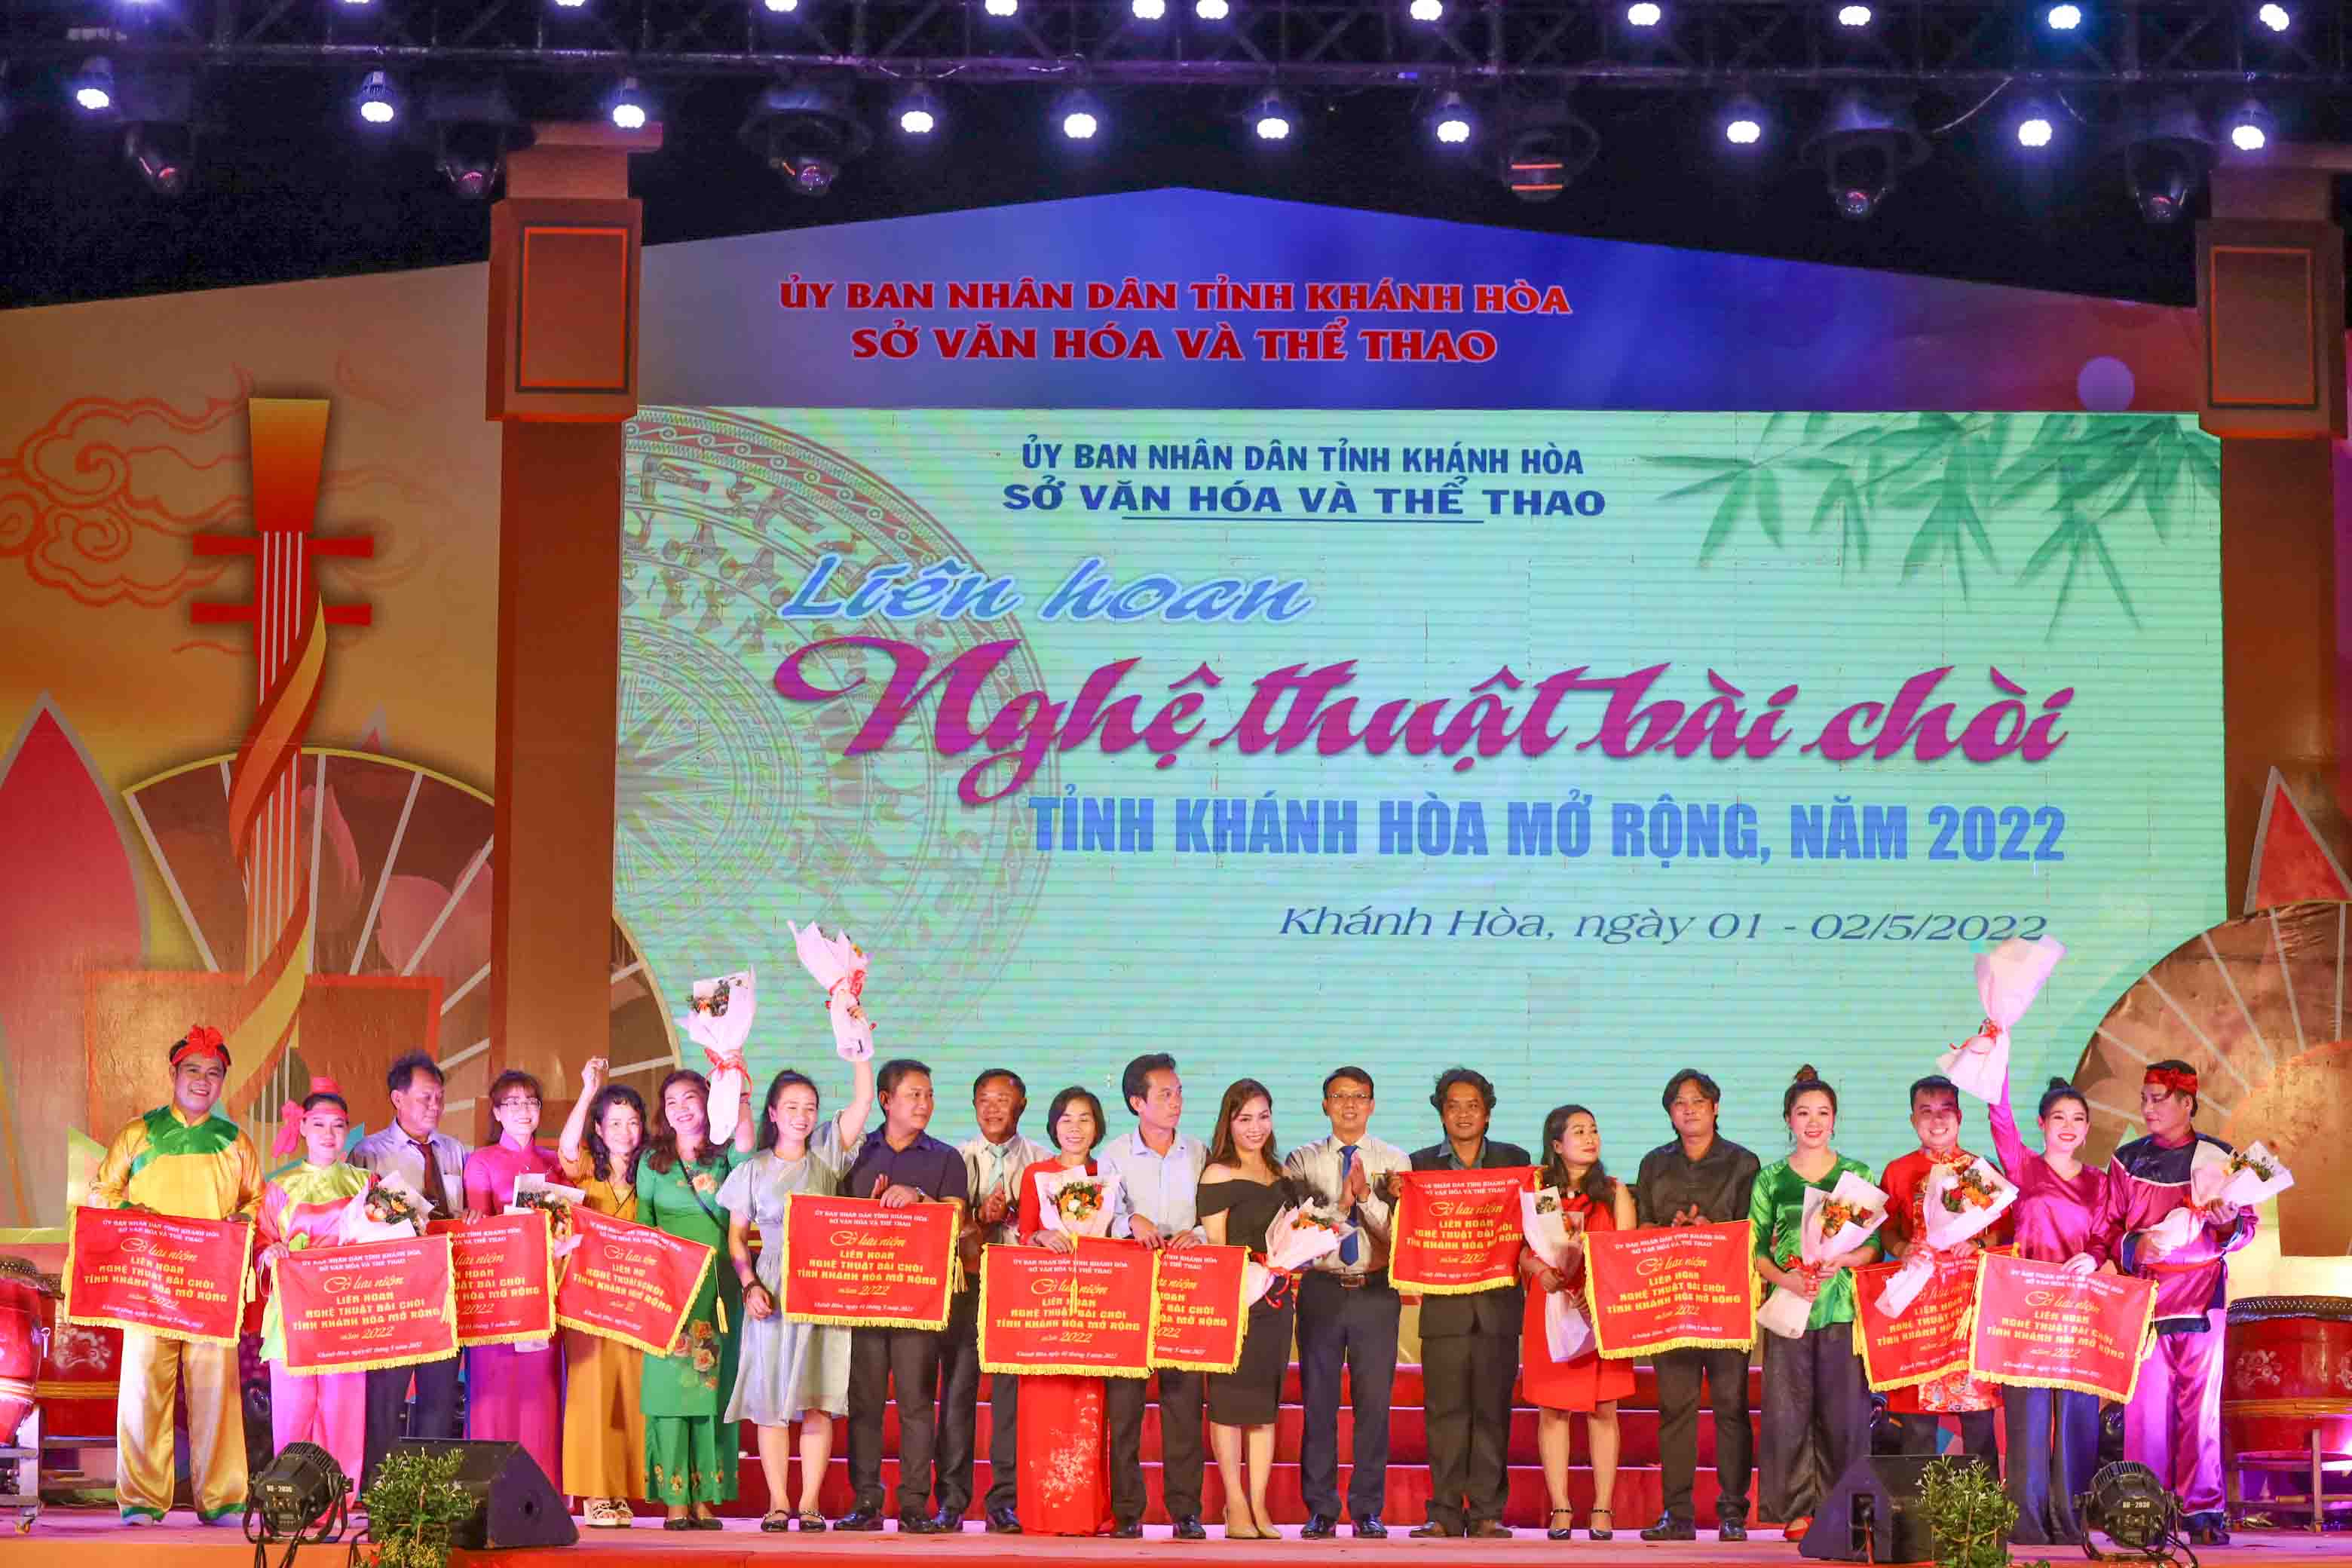 Lãnh đạo Sở Văn hóa và Thể thao tỉnh Khánh Hòa trao cờ lưu niệm và tặng hoa chúc mừng các đoàn tham gia Liên hoan nghệ thuật bài chòi. 